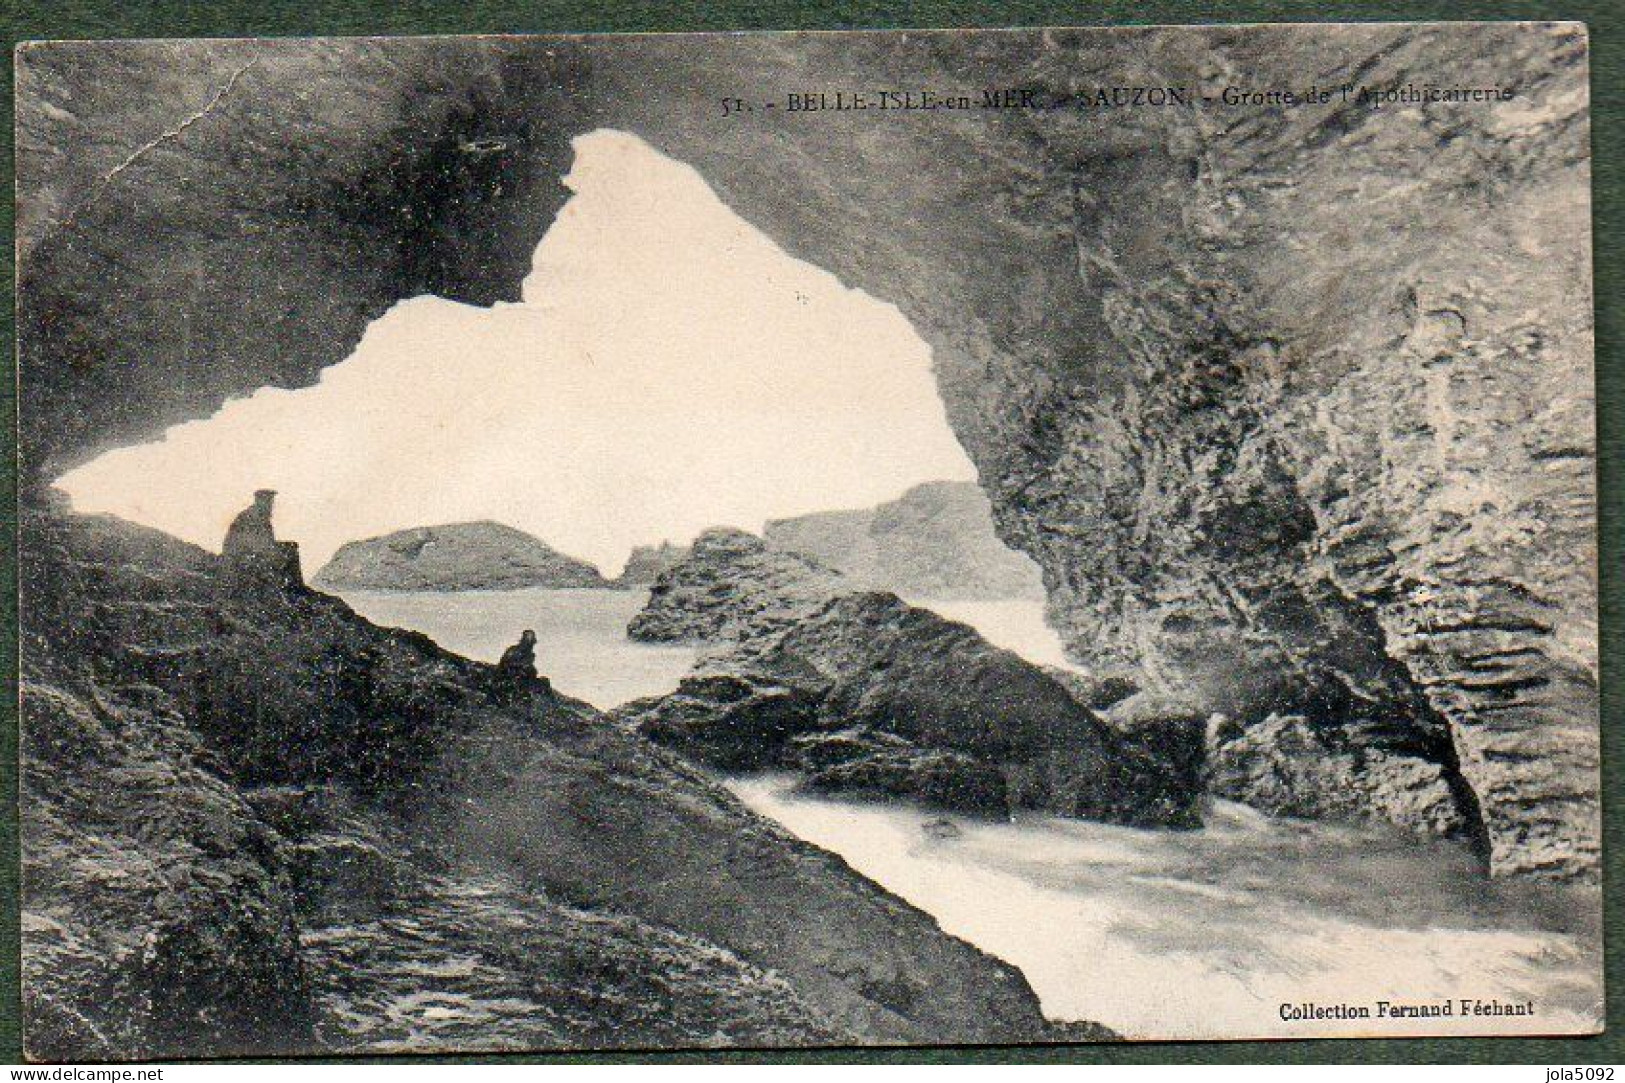 56 - BELLE-ISLE-en-MER - SAUZON - Grotte De L'Apothicairerie - Belle Ile En Mer